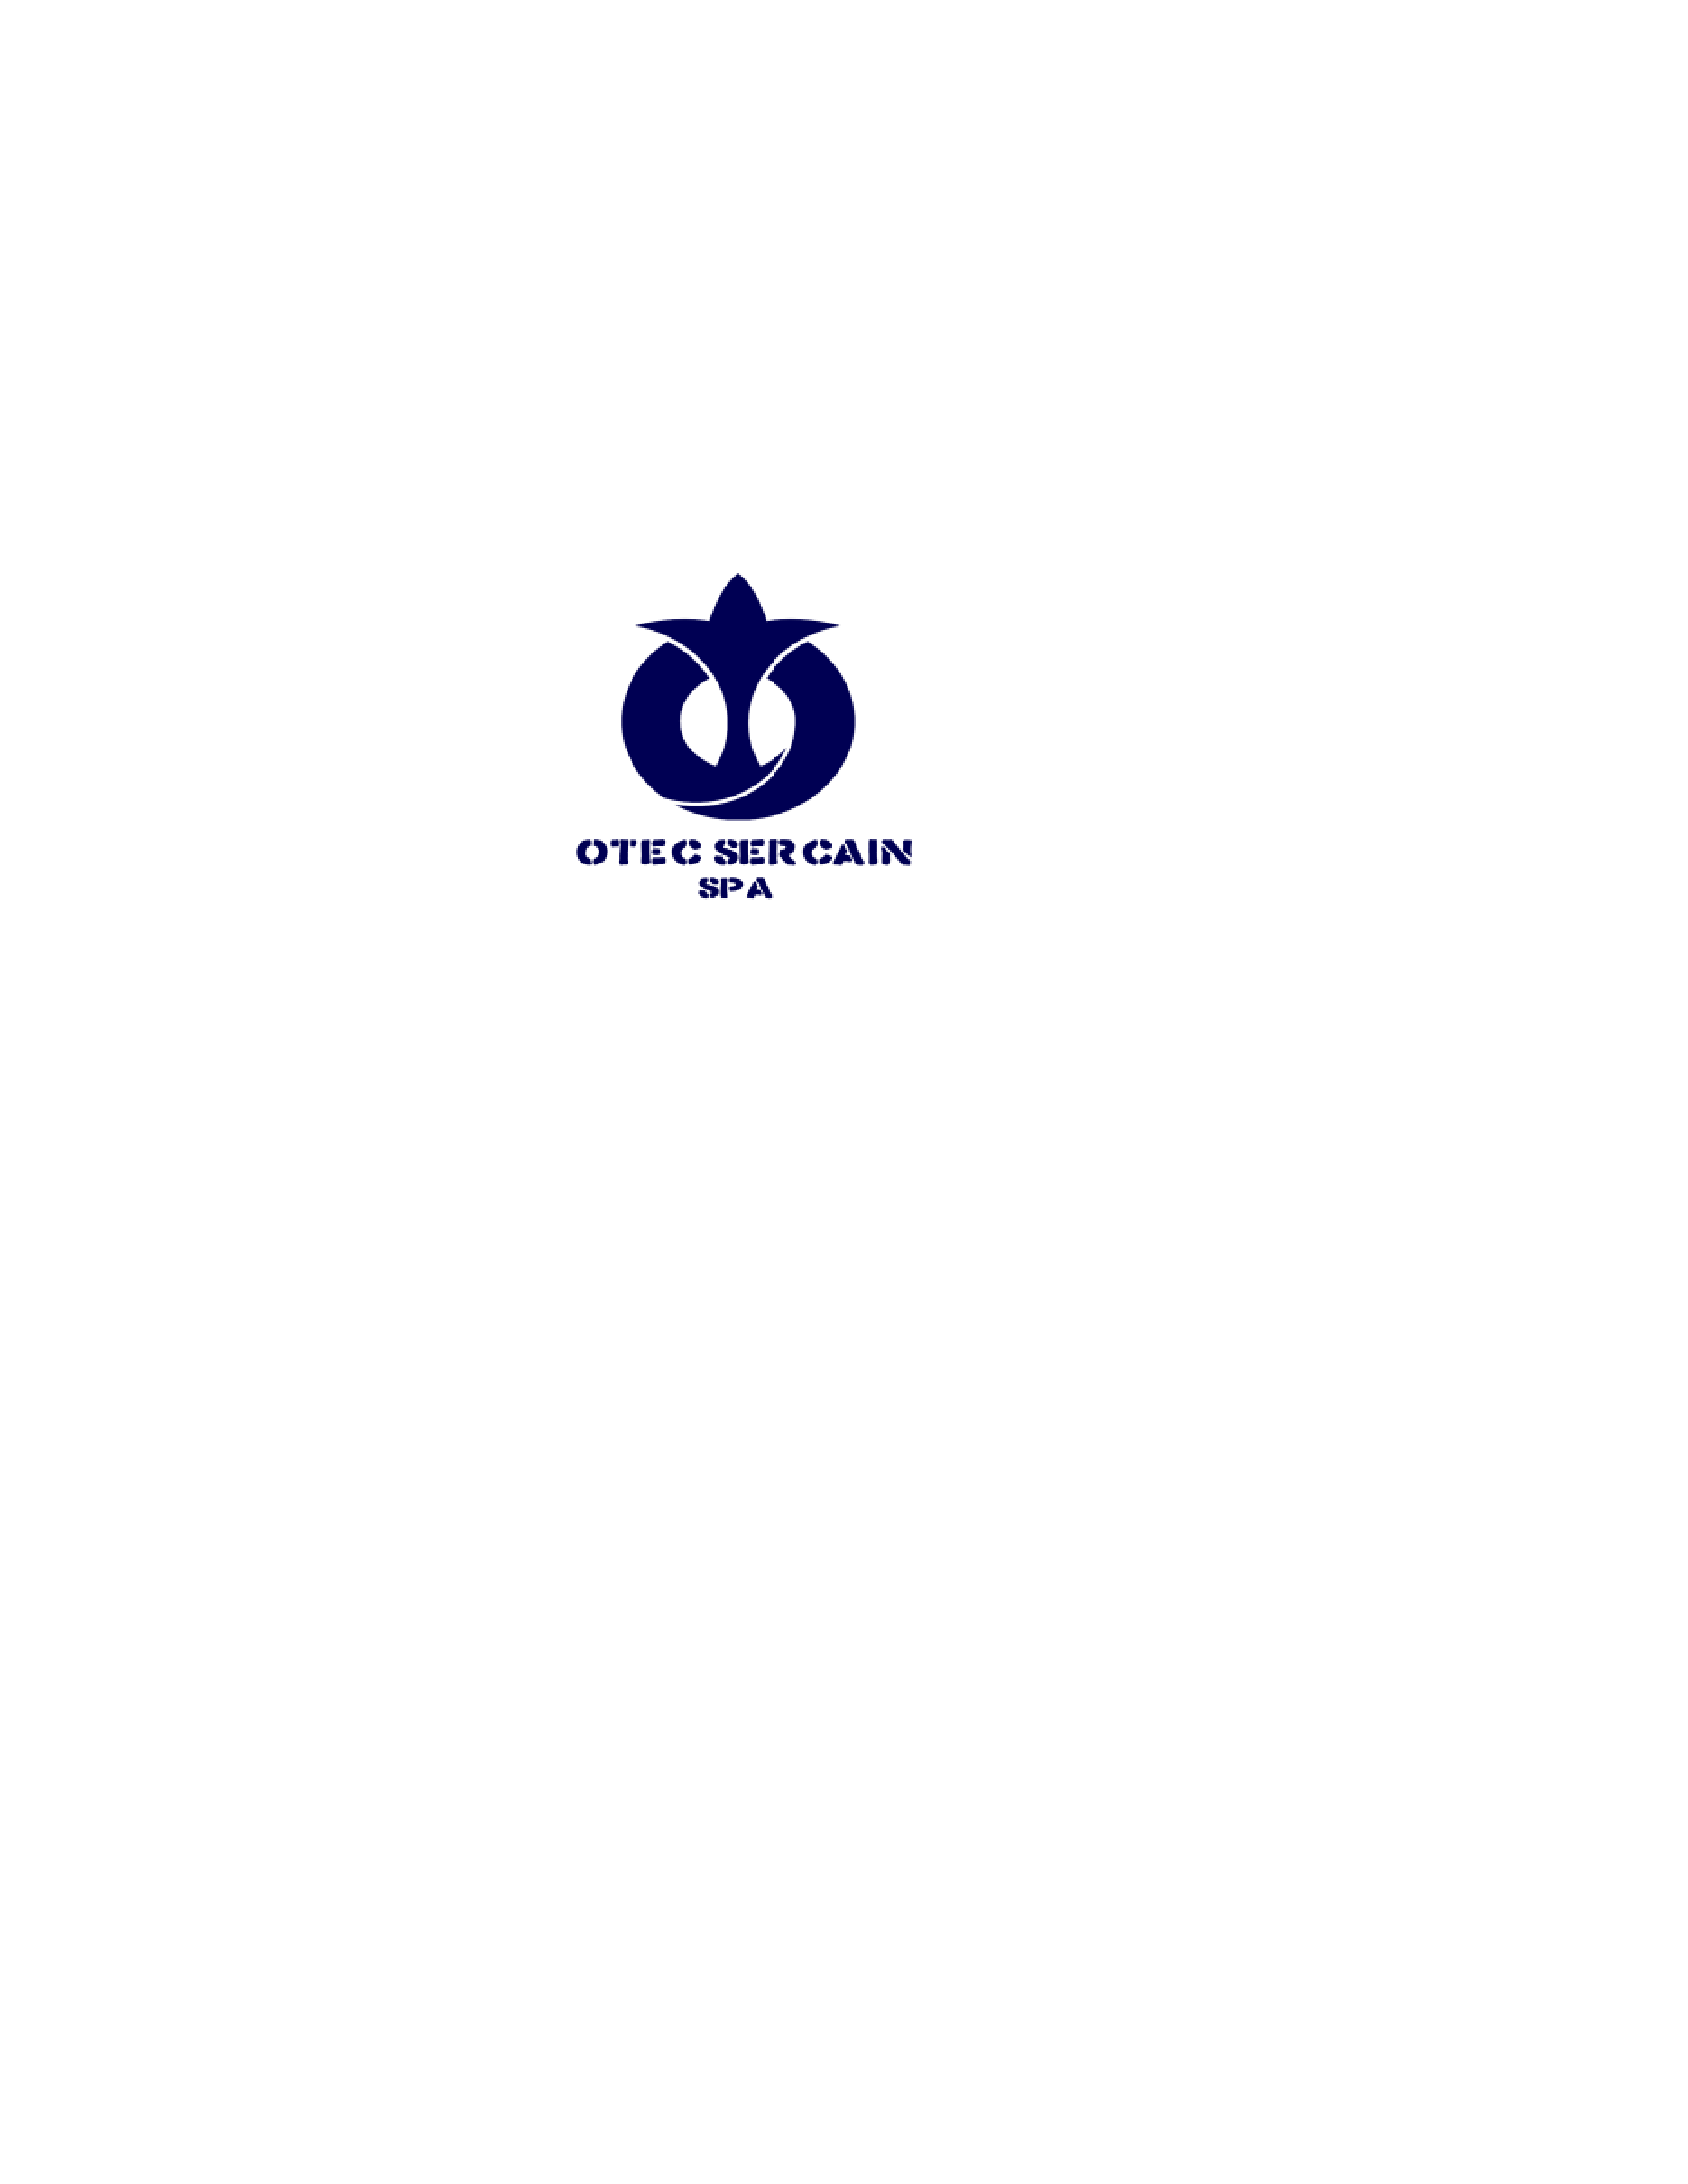 Logo Servicios de Capacitación Integral Sercain SpA